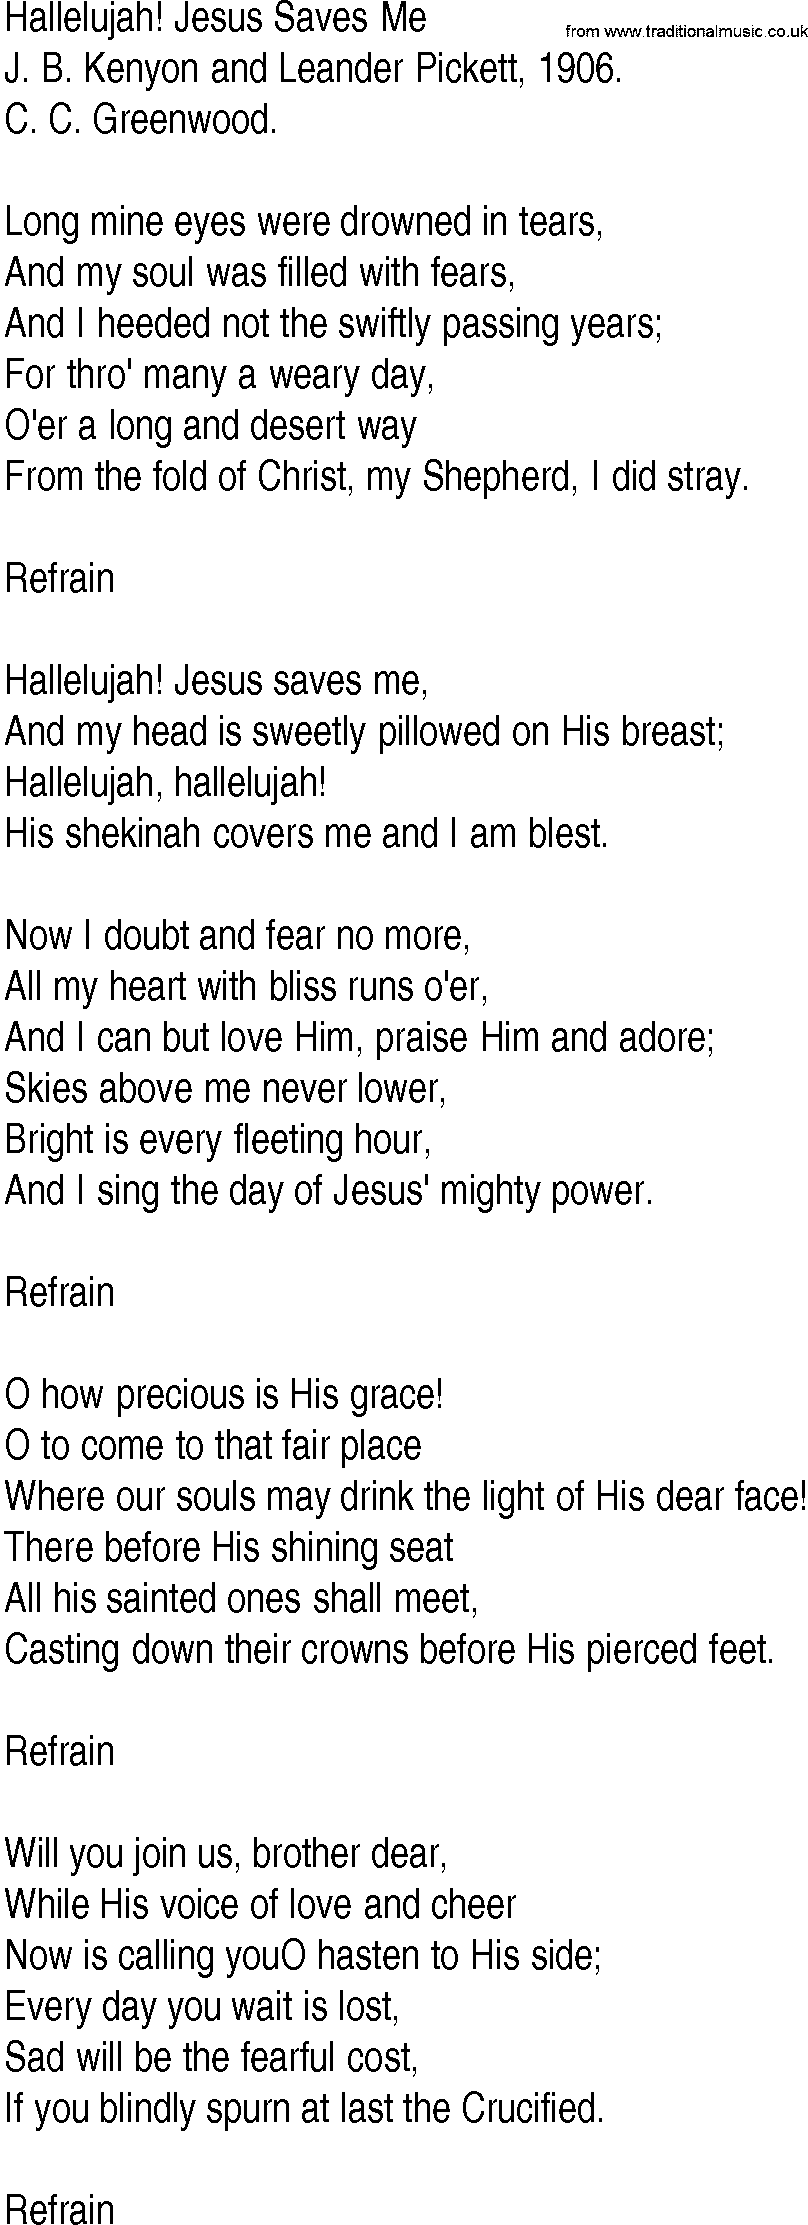 Hymn and Gospel Song: Hallelujah! Jesus Saves Me by J B Kenyon and Leander Pickett lyrics